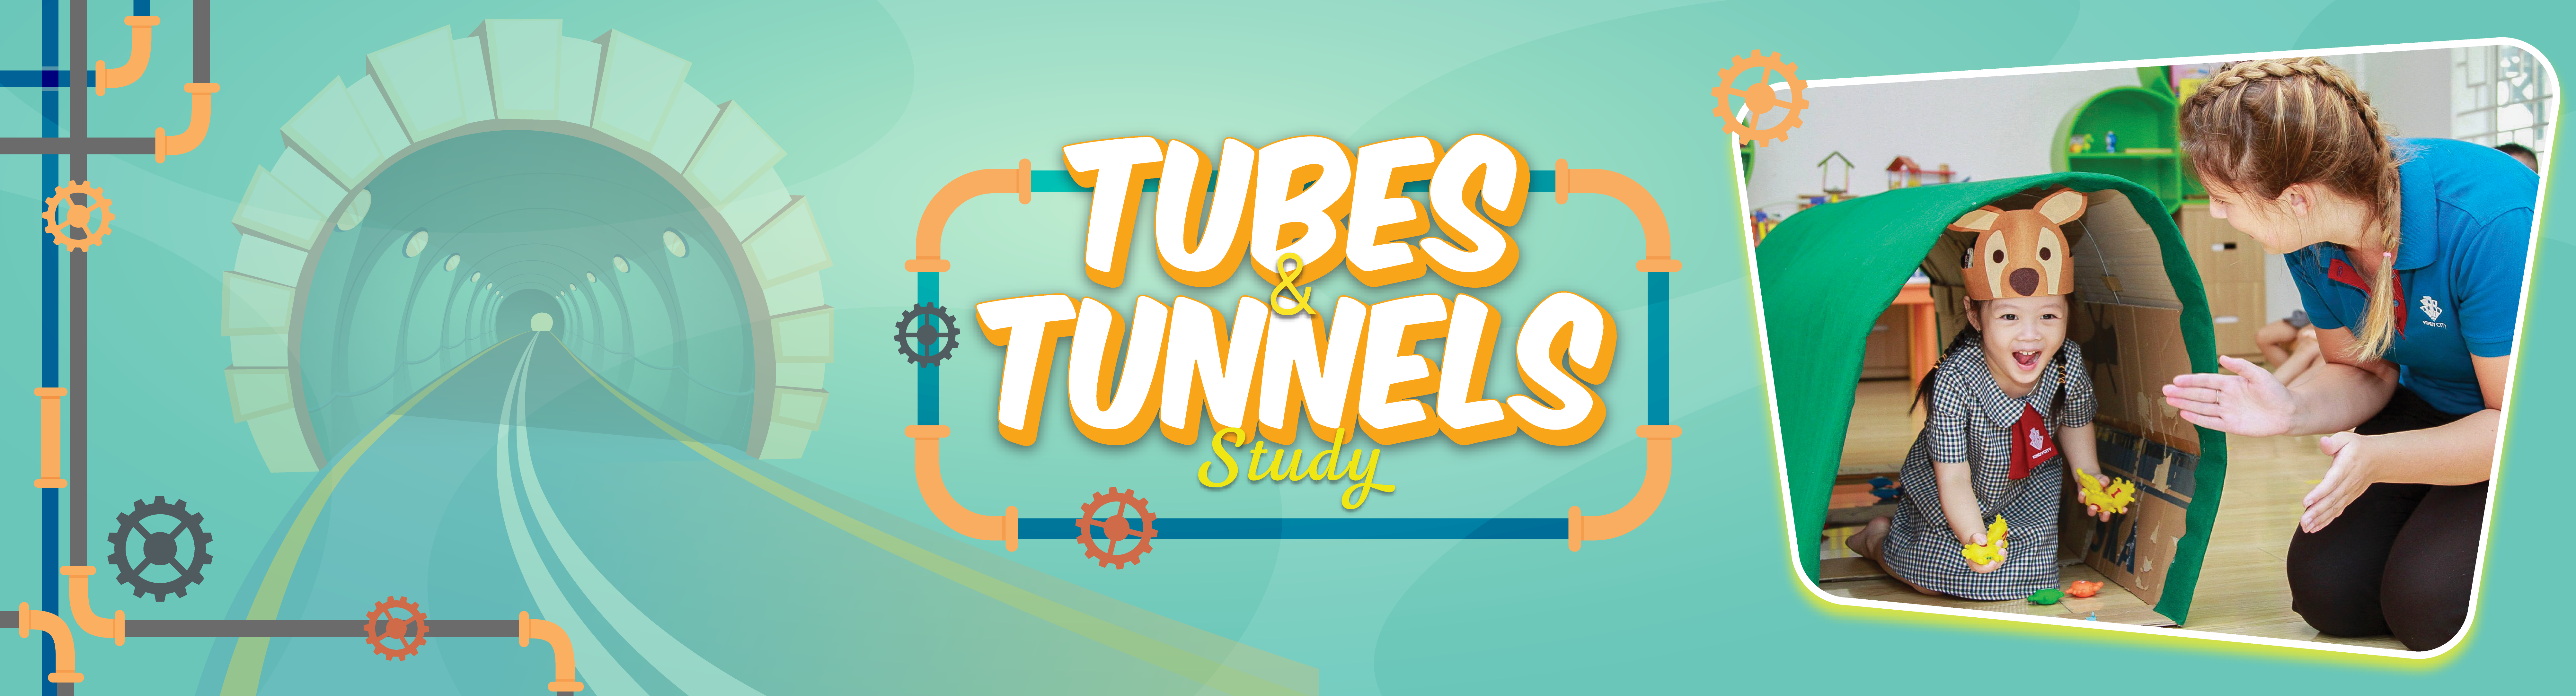 Tube&tunnel_mầm_non_kindy_city